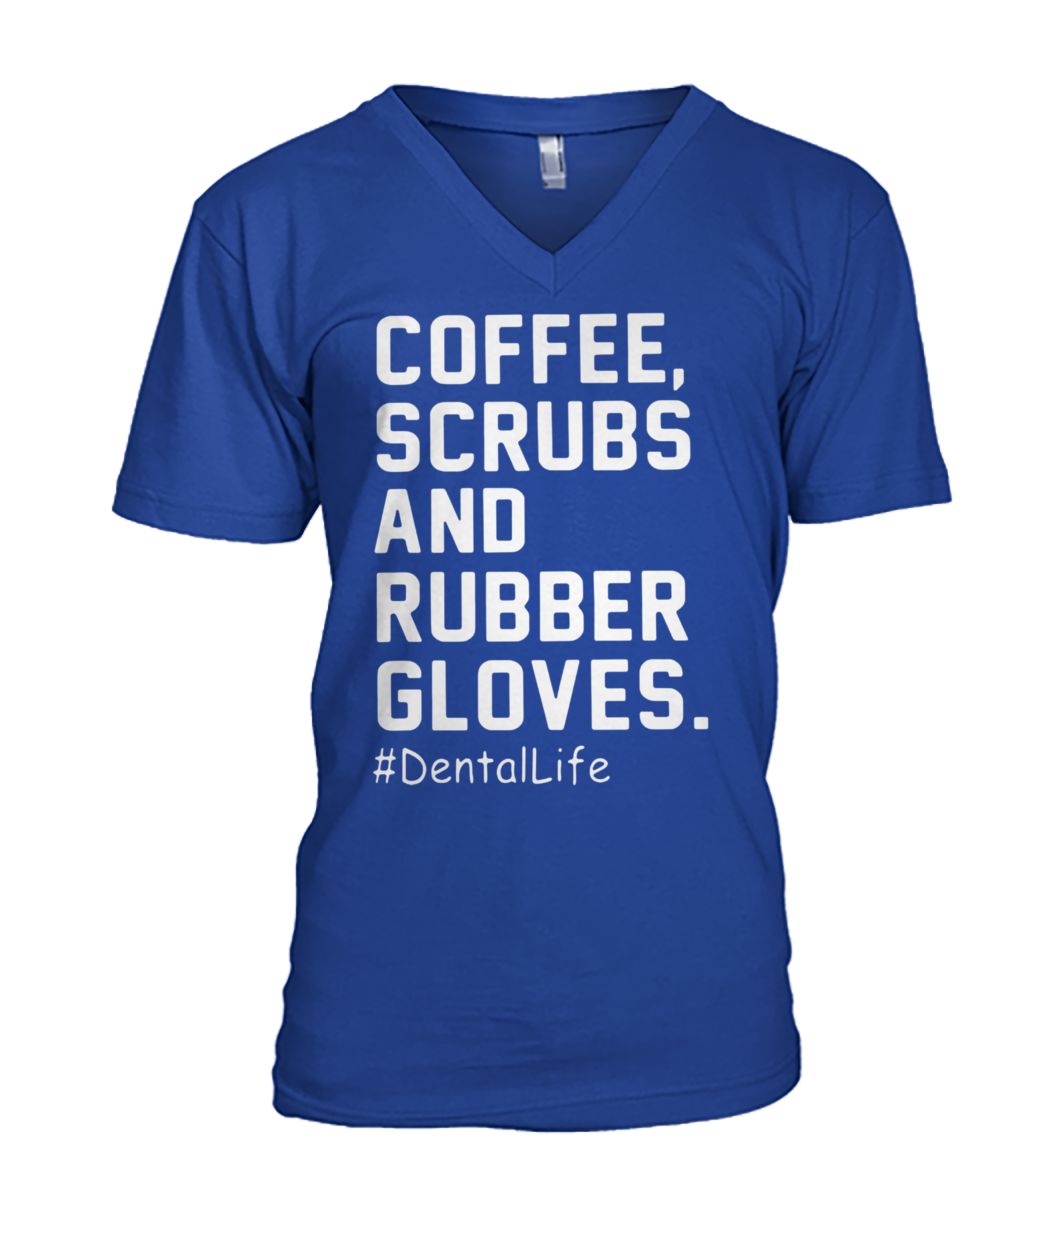 Coffee scrubs and rubber gloves dentallife mens v-neck